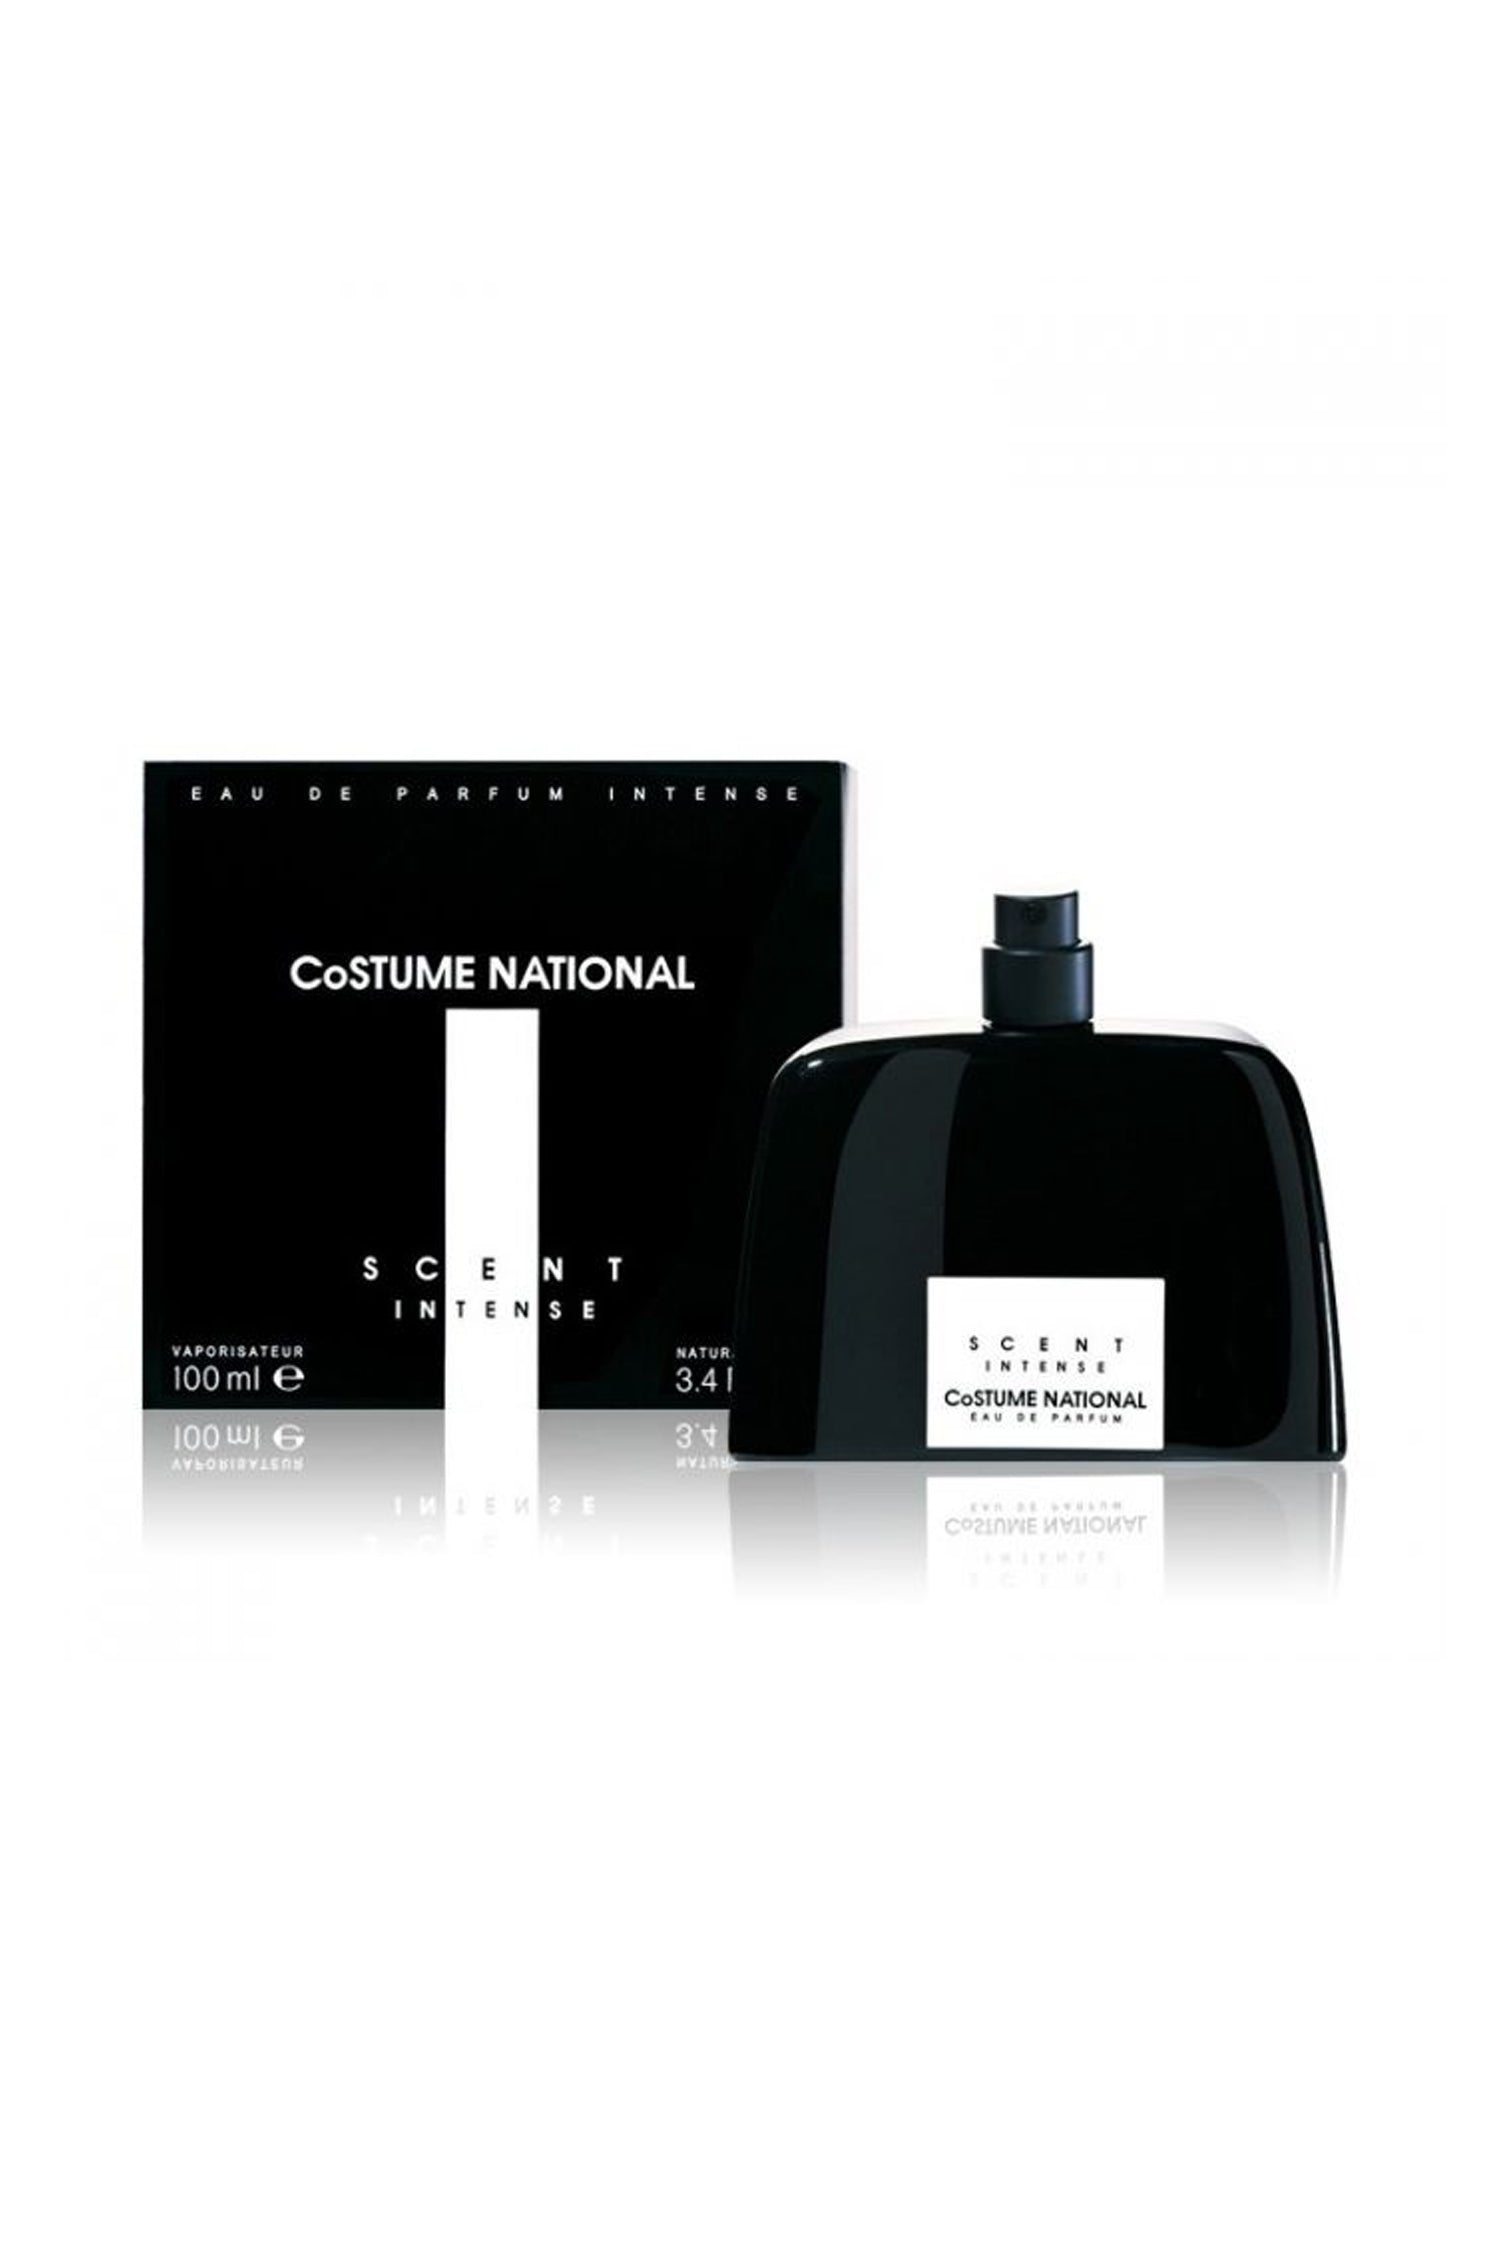 scent intense costume national eau de parfum